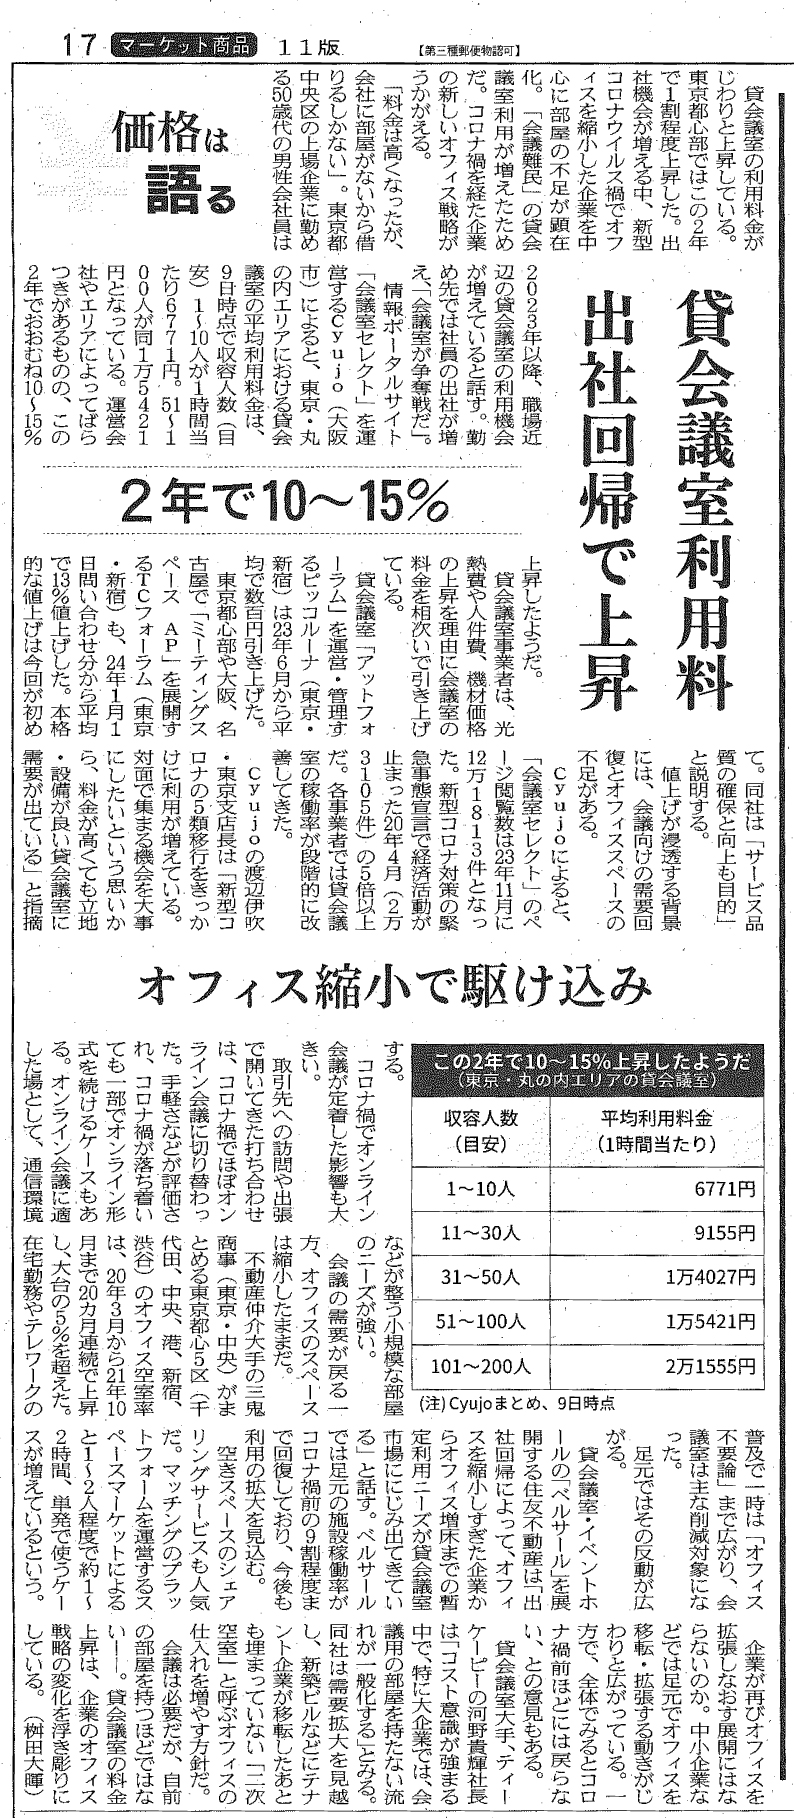 日本経済新聞掲載